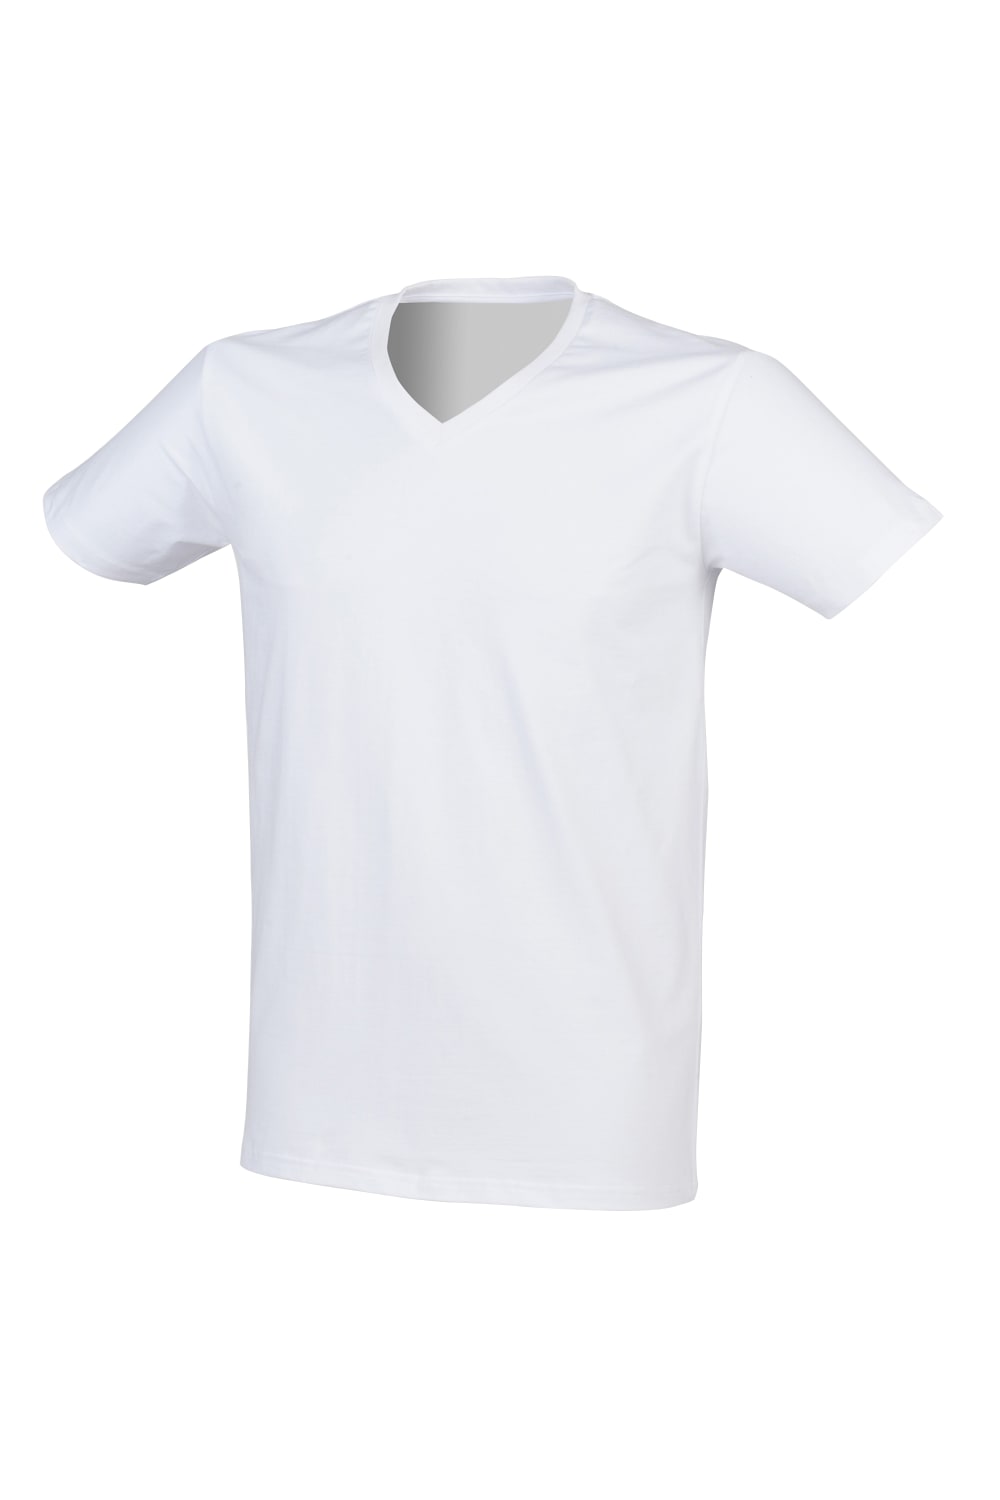 Skinni Fit Men Mens Feel Good Stretch V-neck Short Sleeve T-Shirt (White)